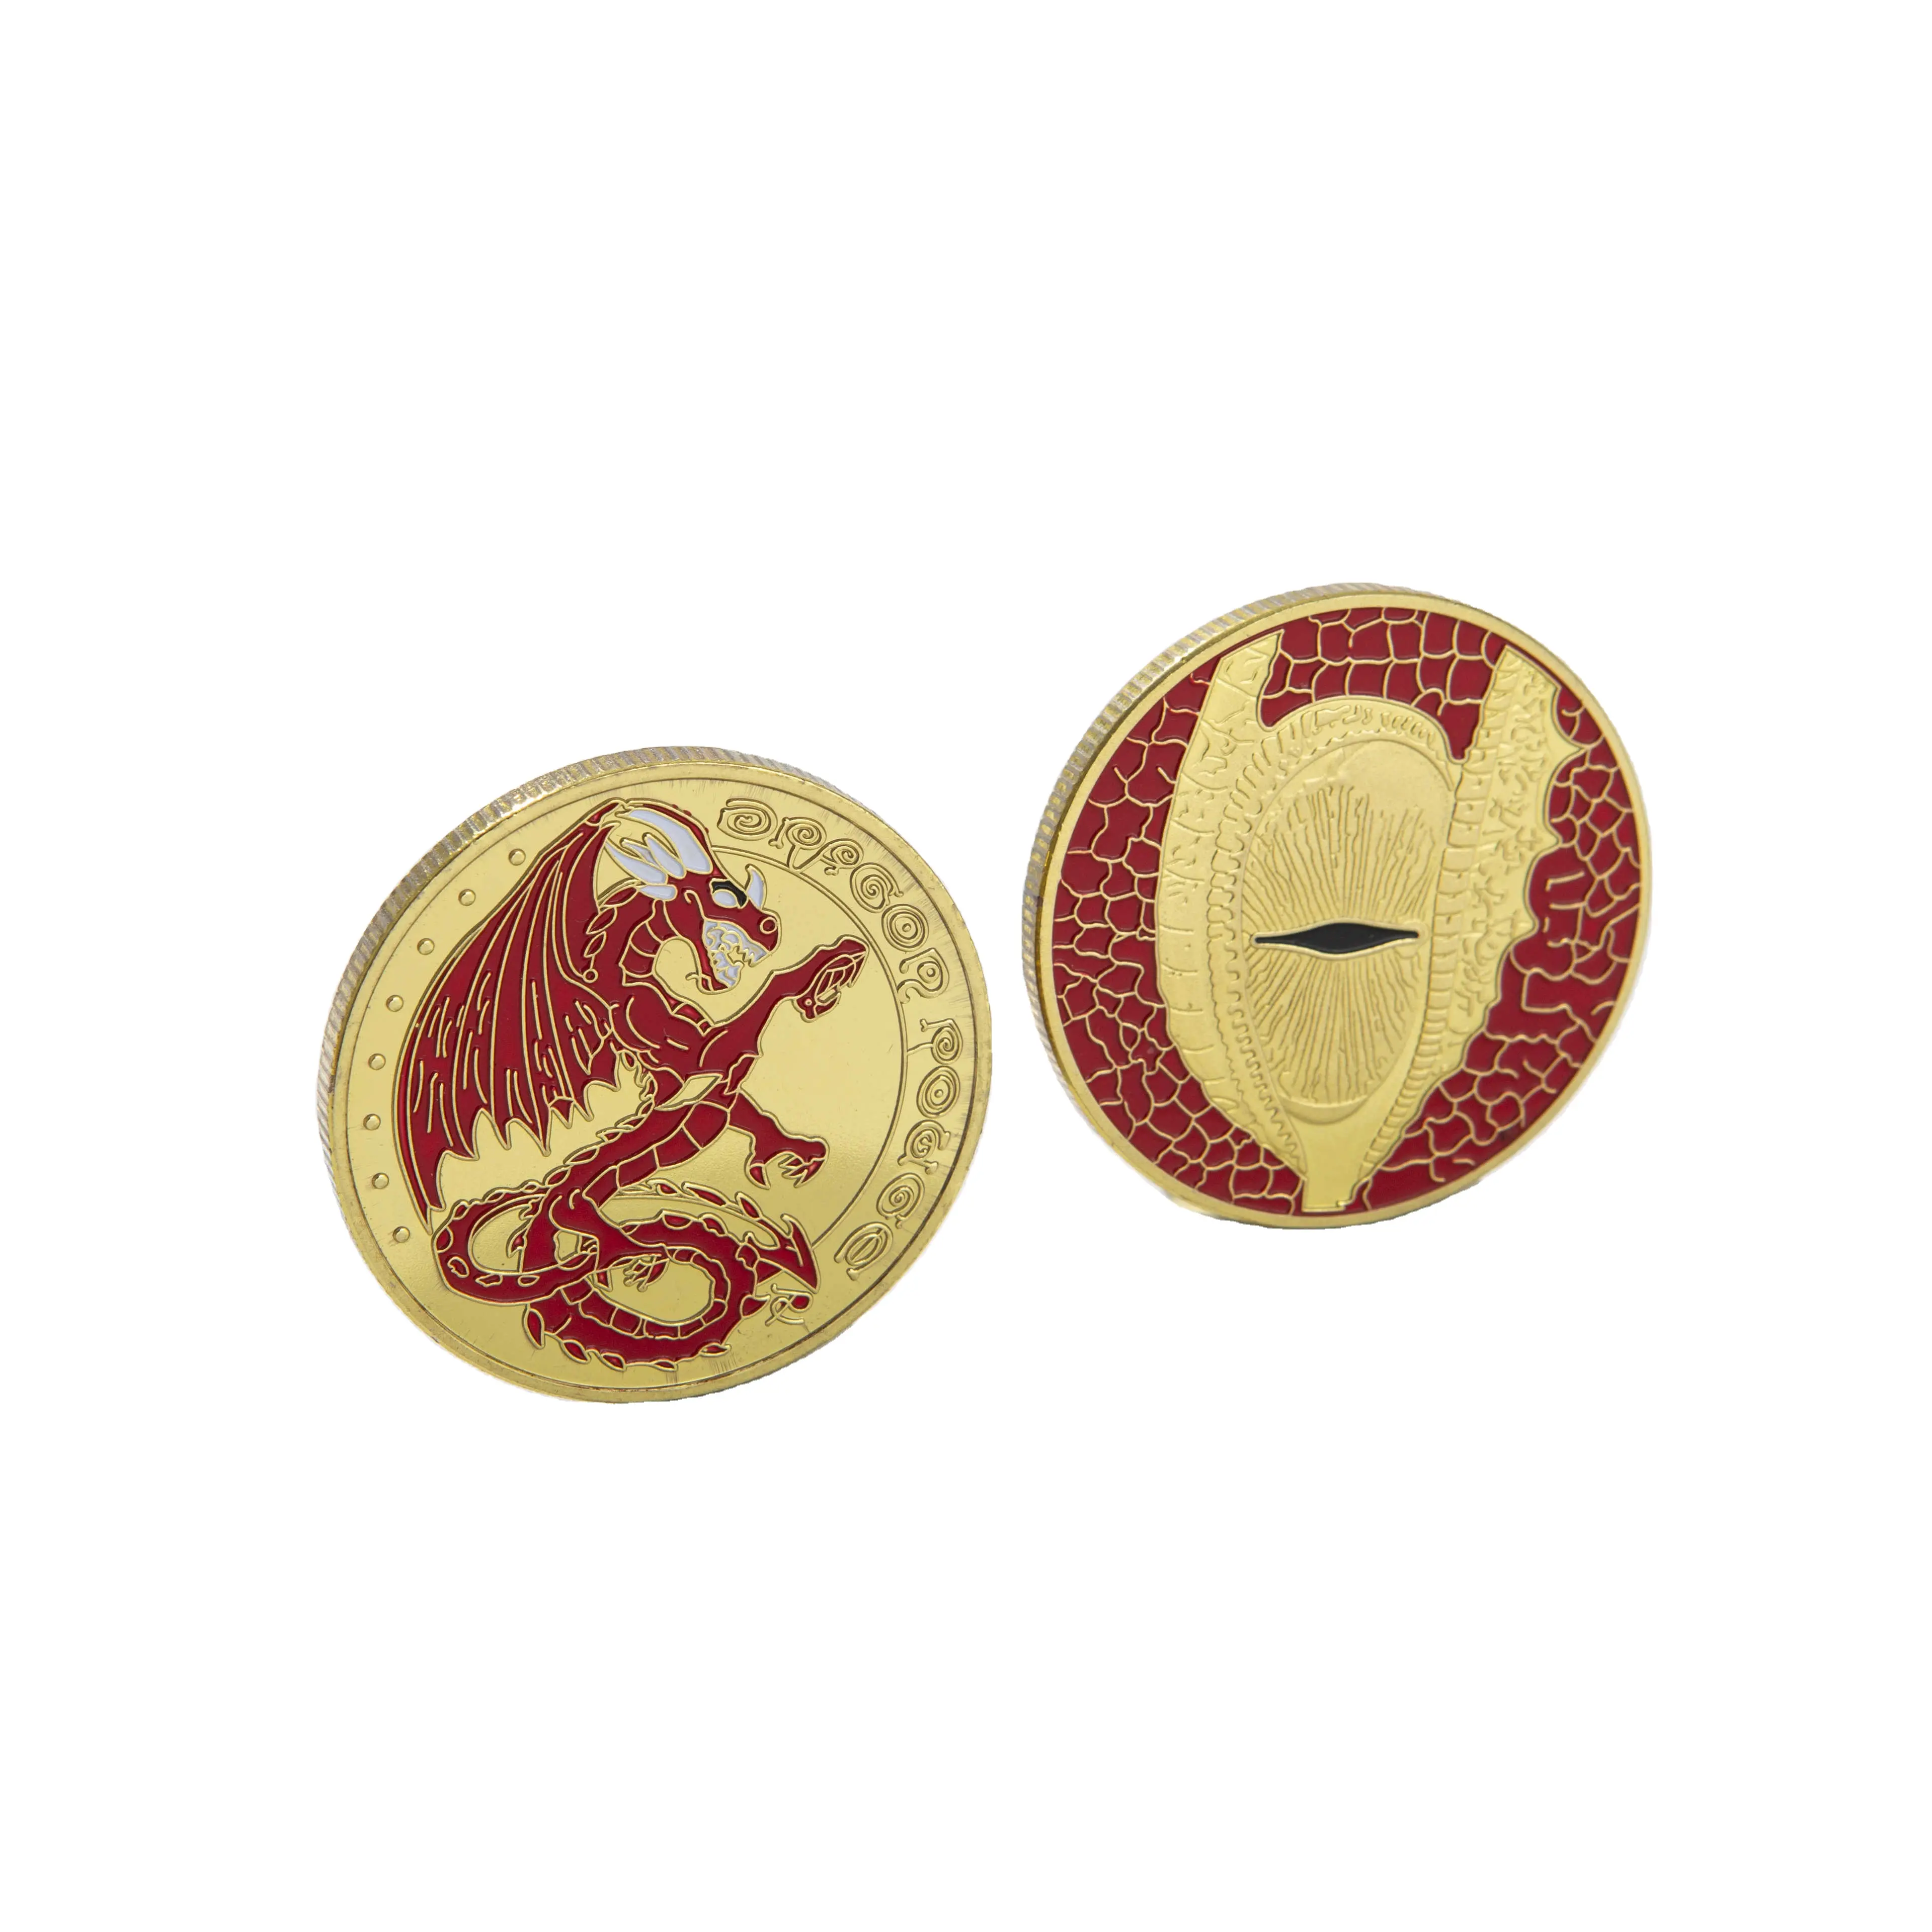 Leveren Buitenlandse Souvenirs Reliëf Kleur Gestippelde Verf Medaillons Metalen Badges Verzamelaar Munten Geluksmunten Mode Geschenken